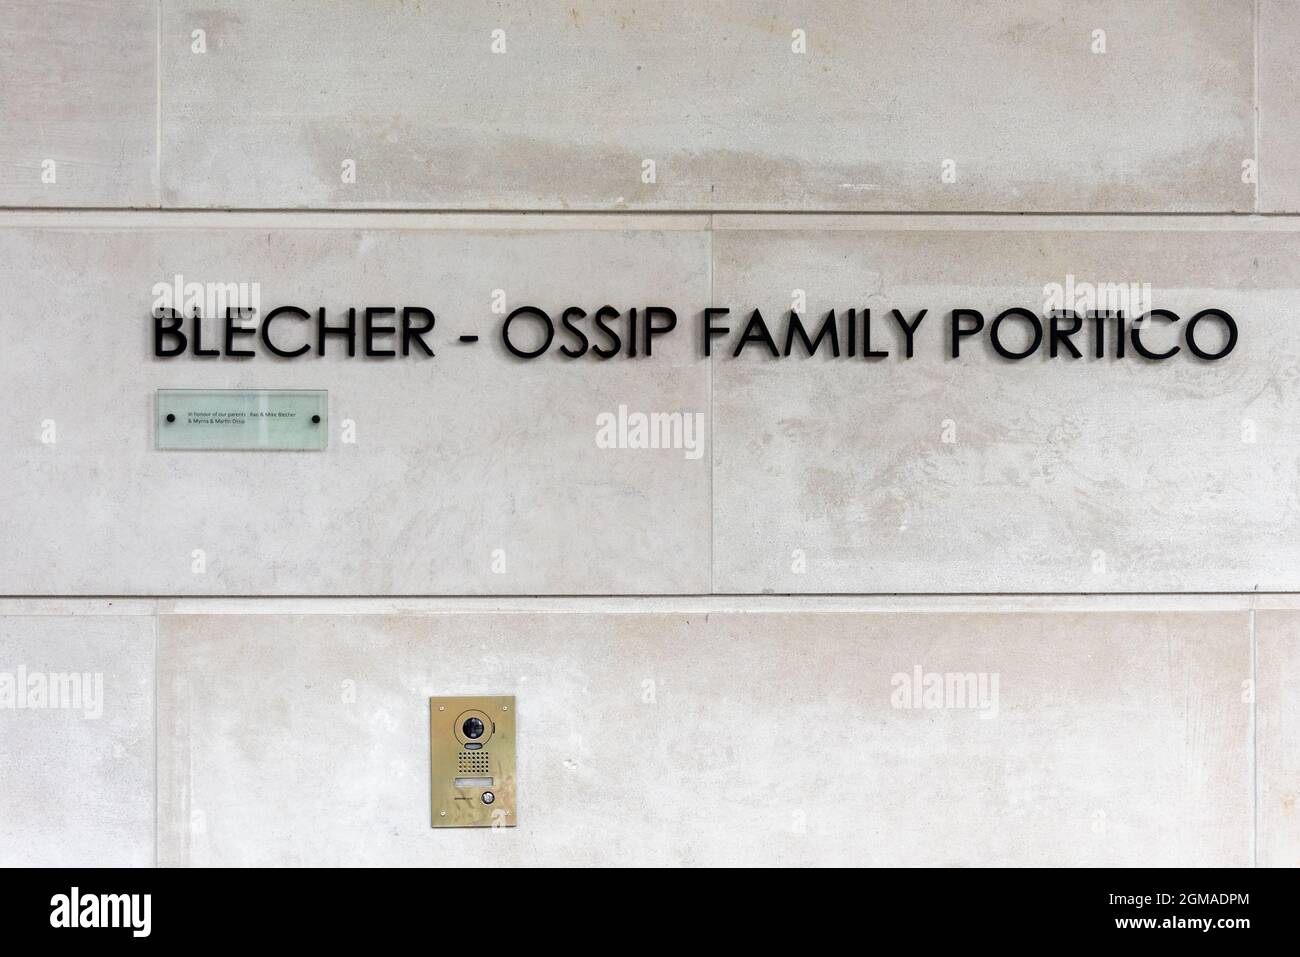 Insegna per il portico della famiglia Blecher - OSSIP al Chabad on Bayview Center for Jewish Life che si trova in 2437 Bayview Avenue a Toronto, Canada Foto Stock